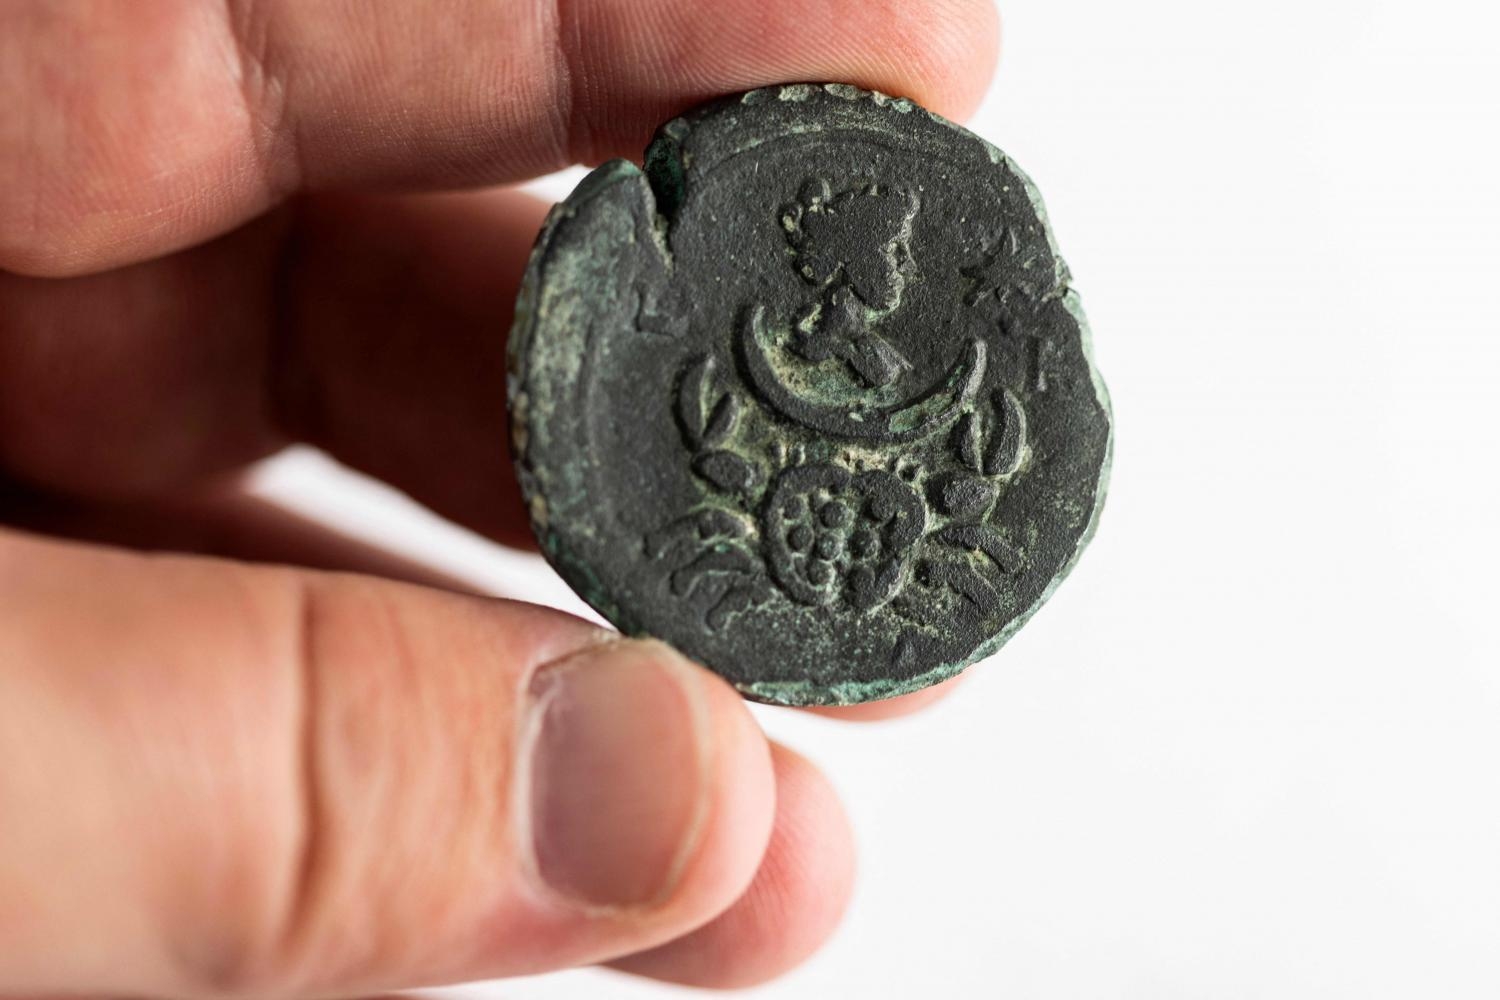 ฮือฮา! อิสราเอลค้นพบเหรียญโบราณ 'รูปเทพีแห่งดวงจันทร์' ยุคจักรวรรดิ์โรมัน อายุ 1,850 ปี 